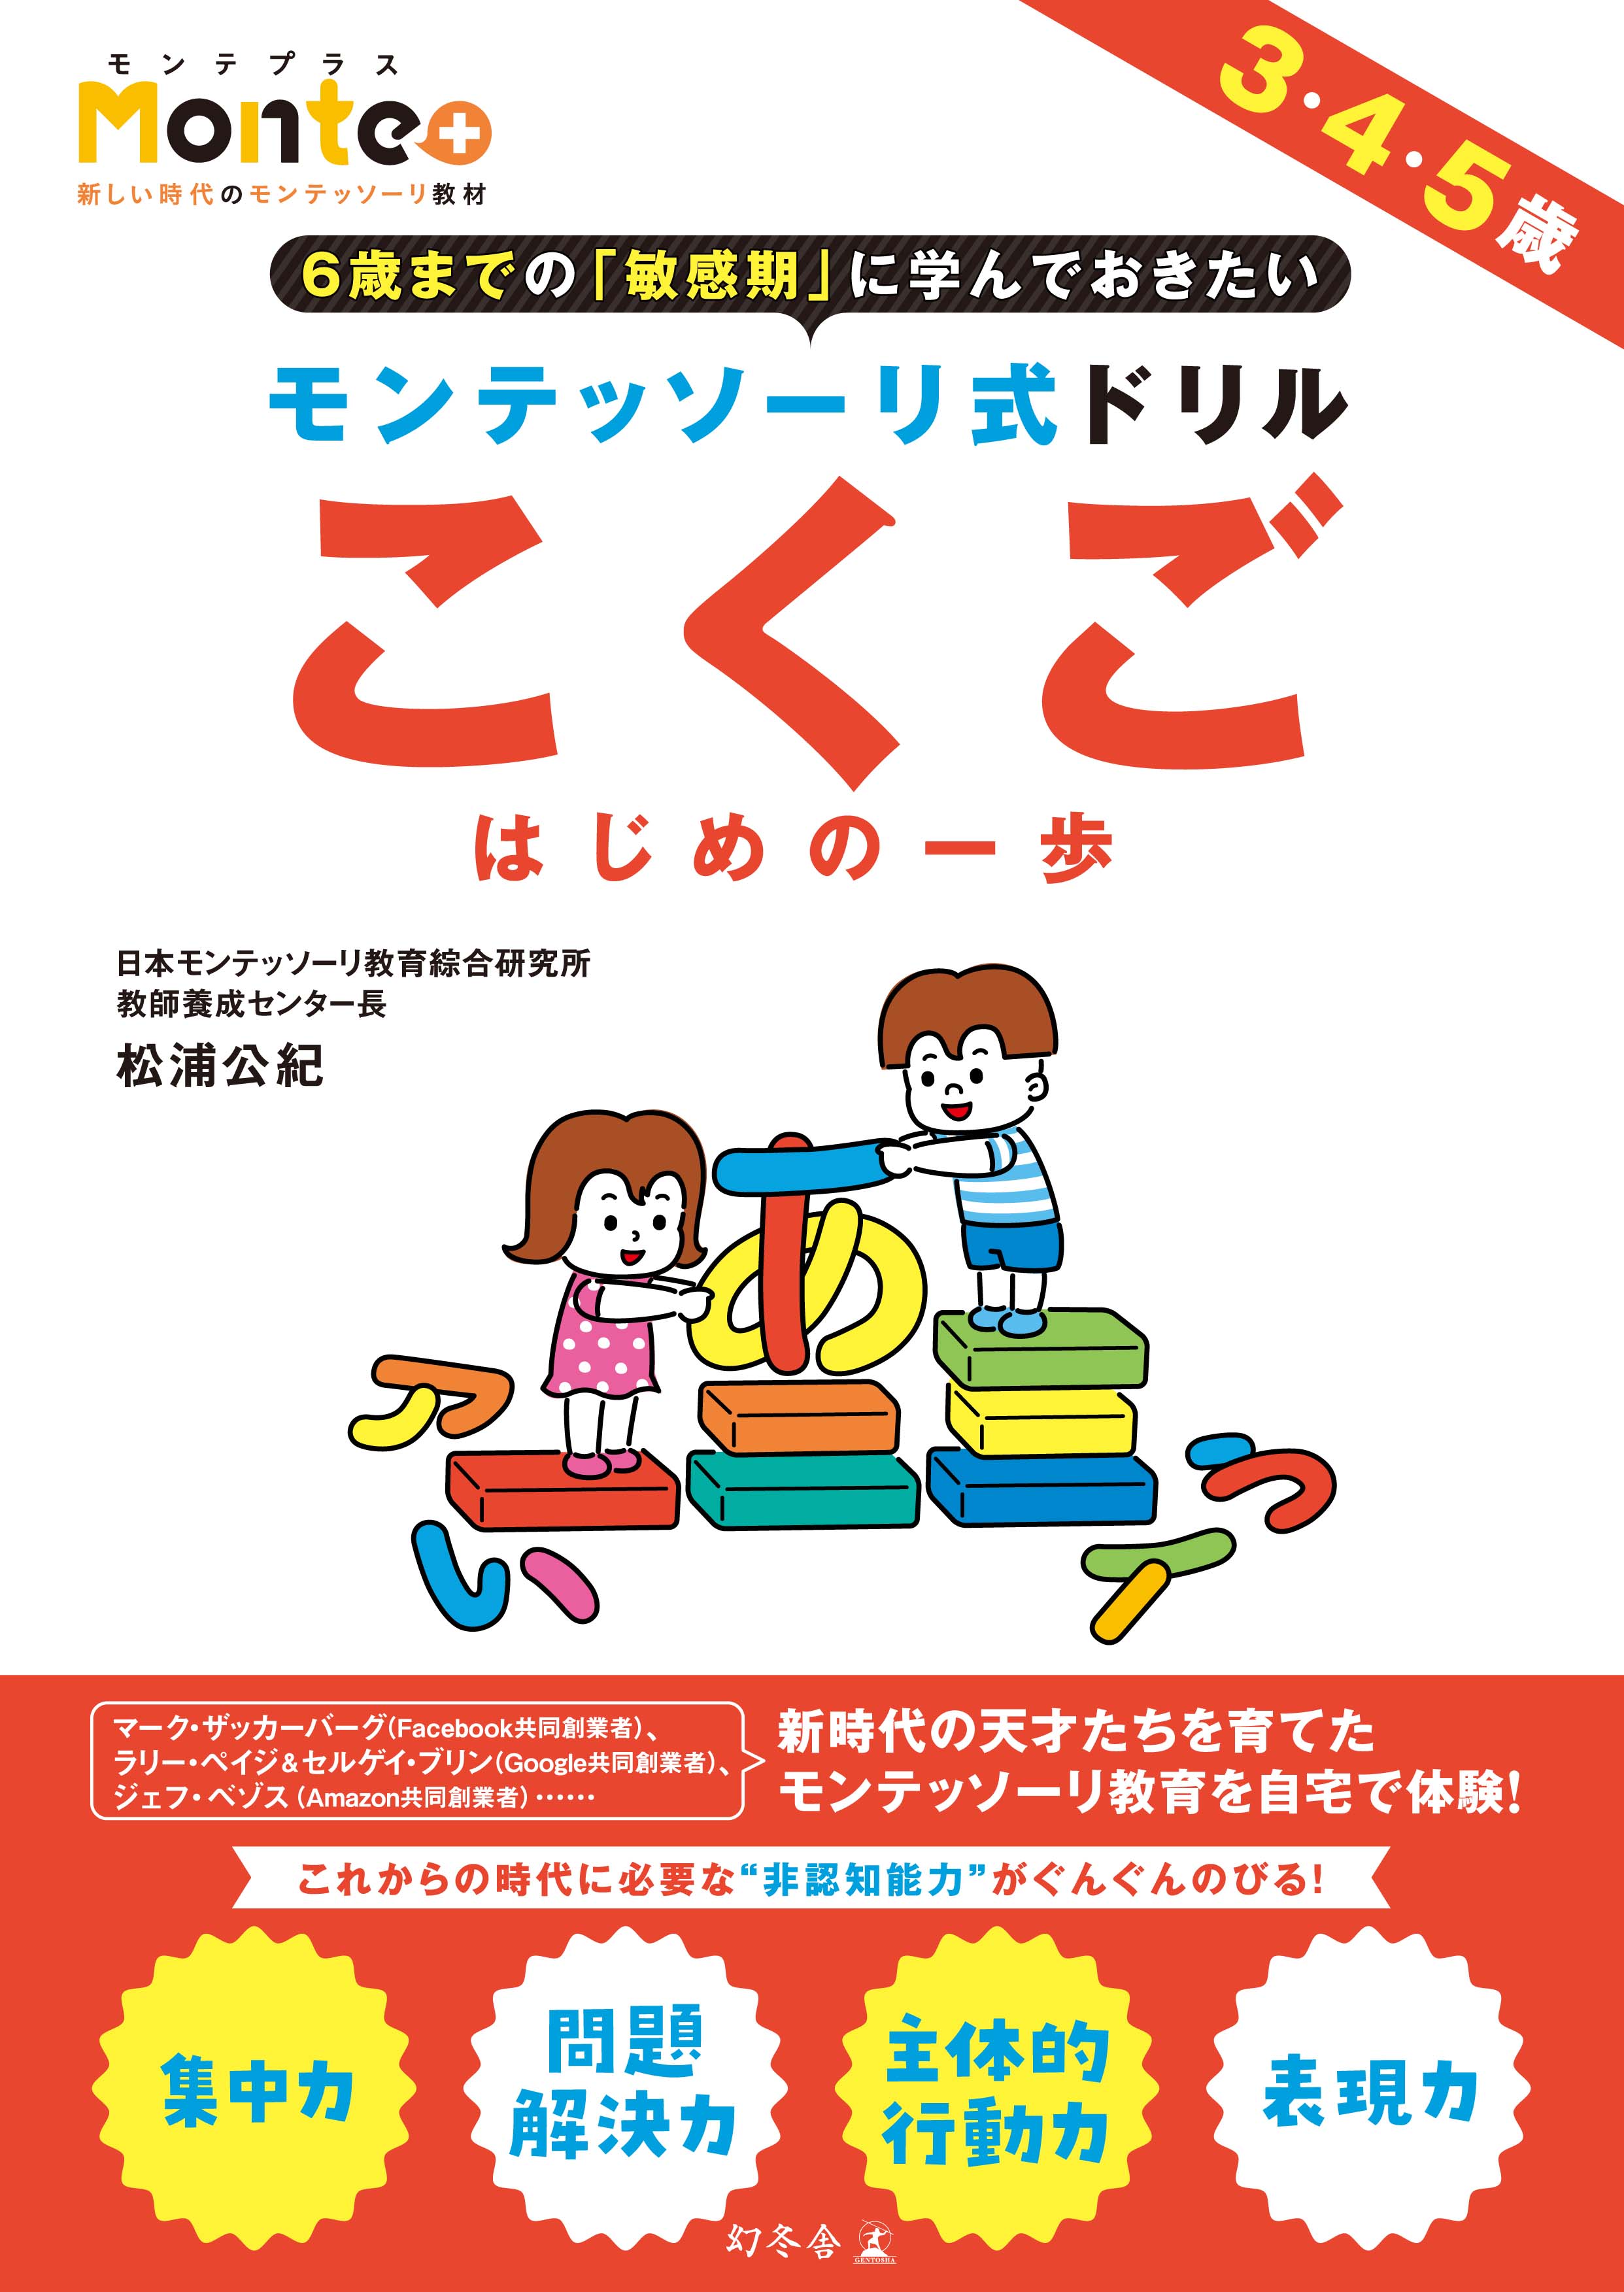 話題の モンテッソーリ教育 を日本ではじめて取り入れた幼児ドリル